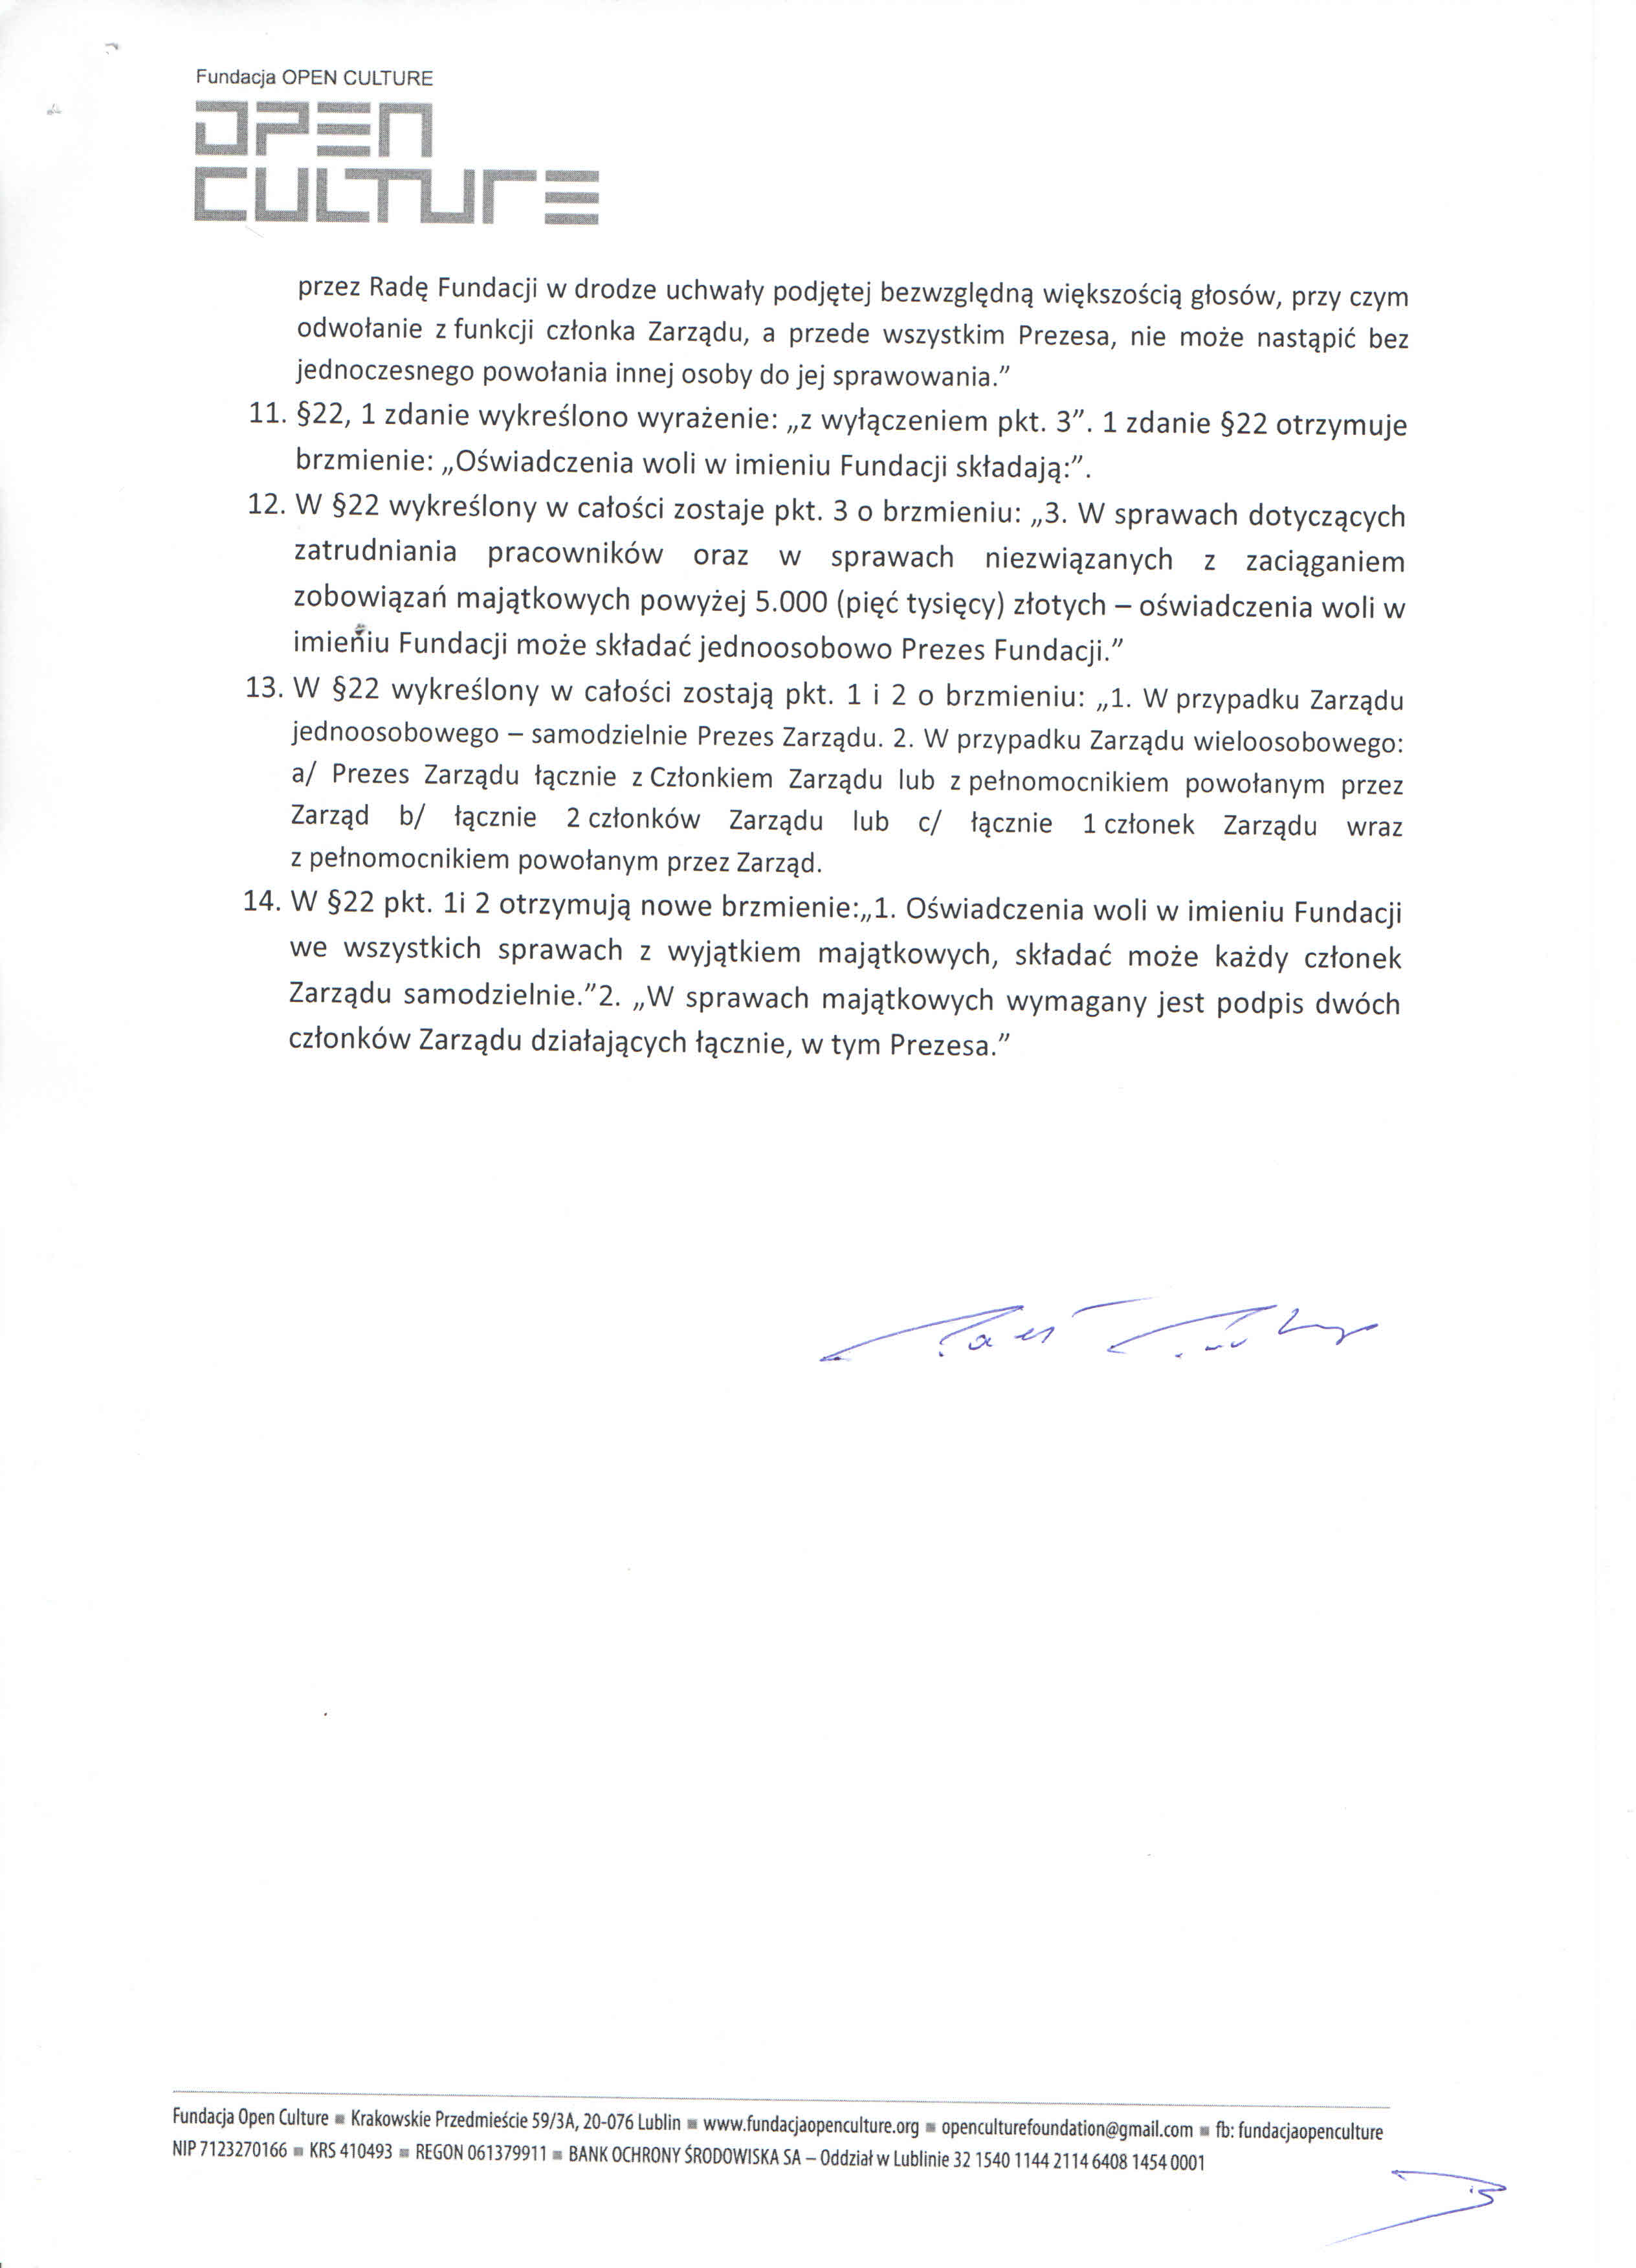 Załącznik nr 1 do uchwały z dnia 30.01.2013 o zmianie statutu Fundacji Open Culture, s. 2 z 2